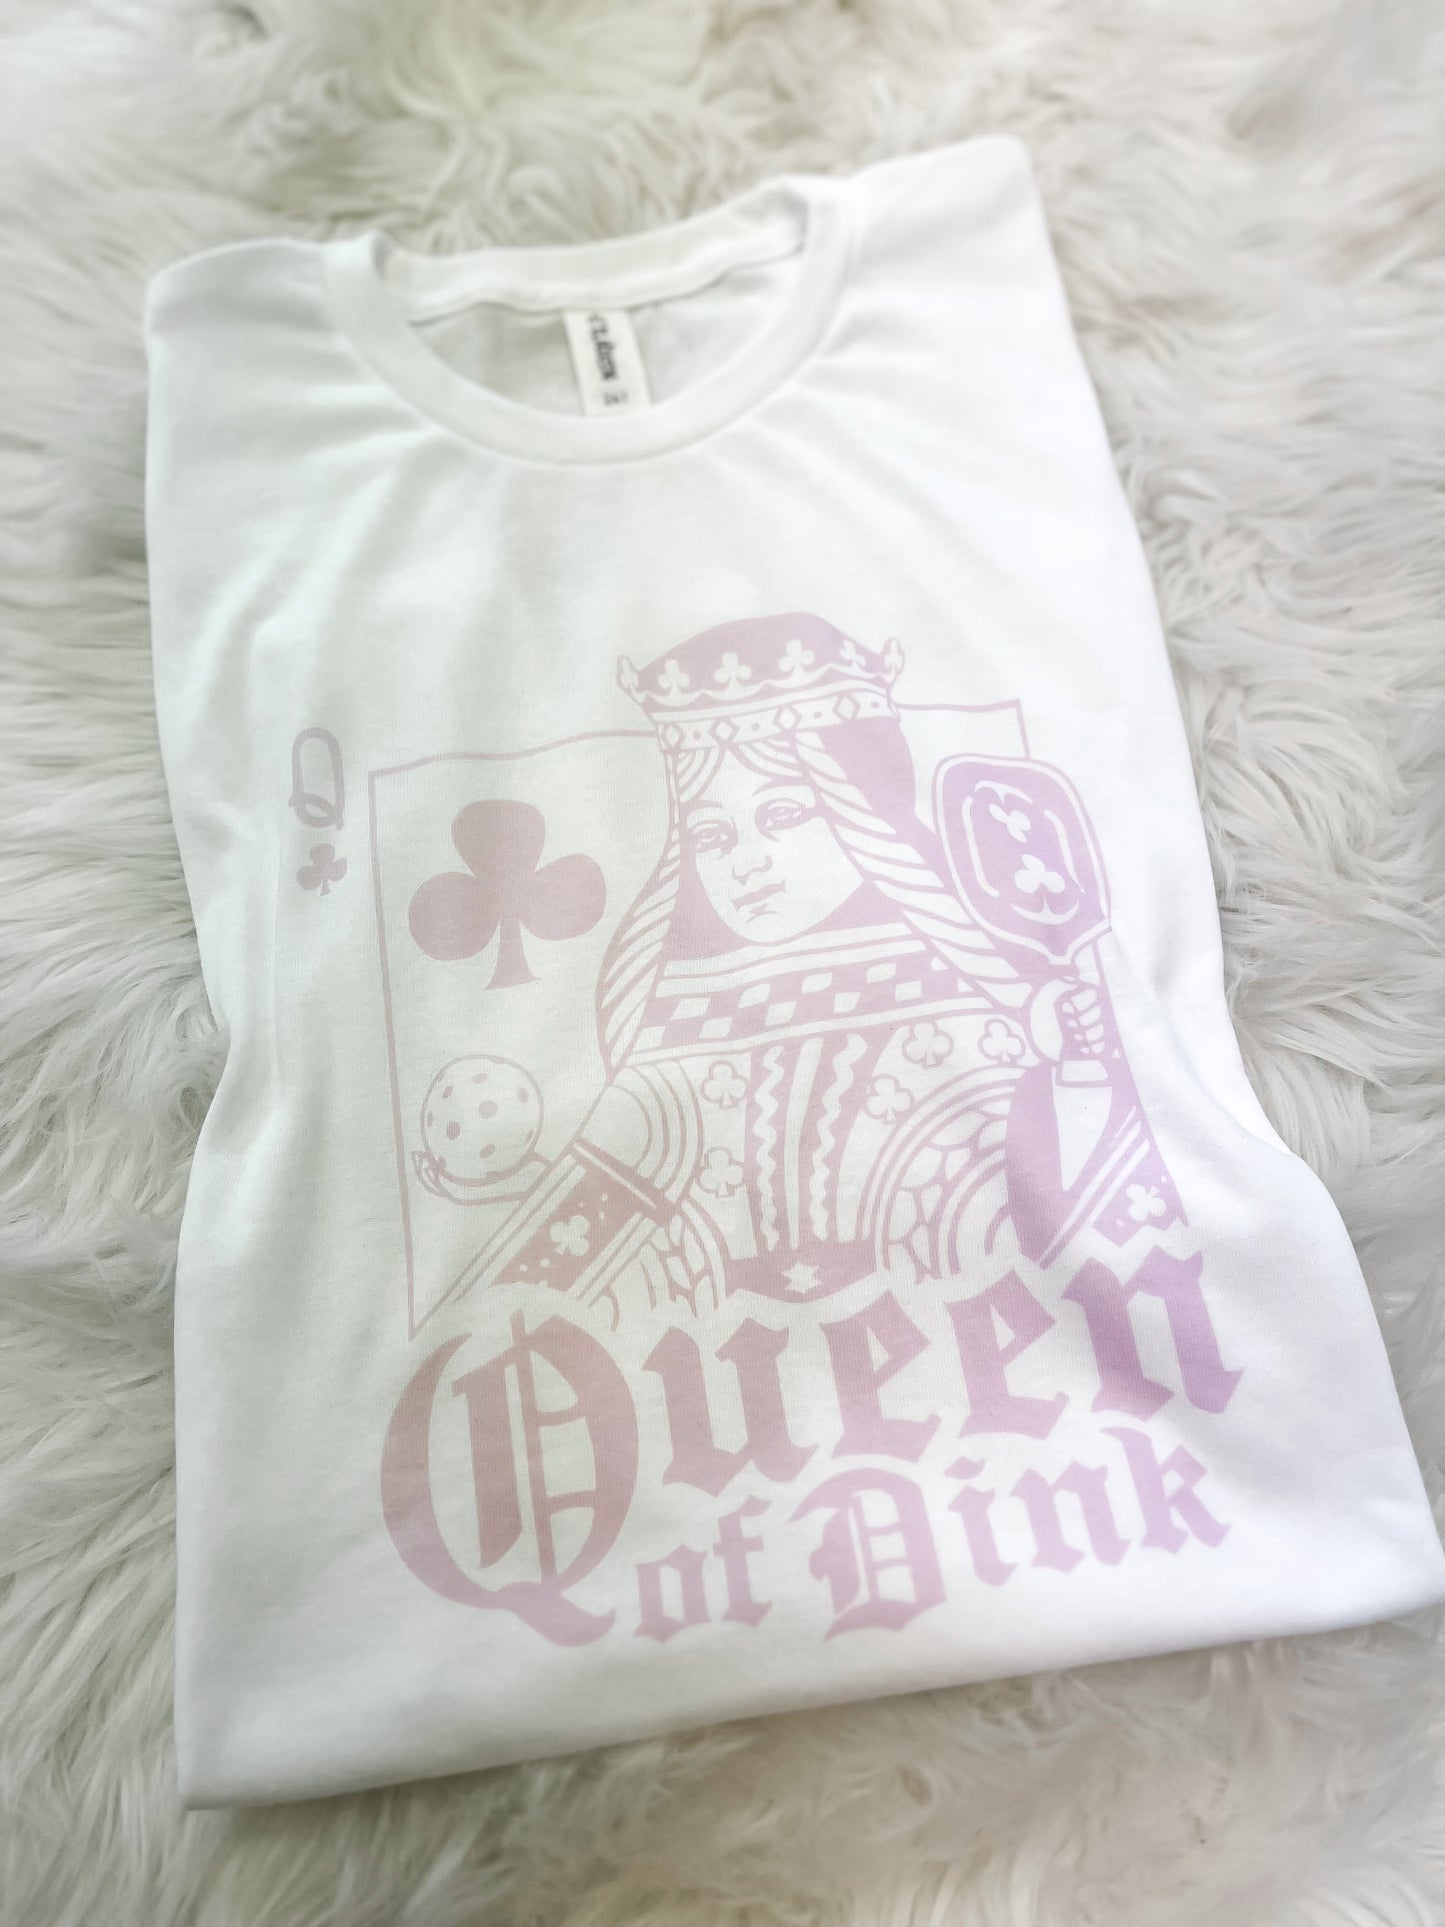 Queen of Dink Tee